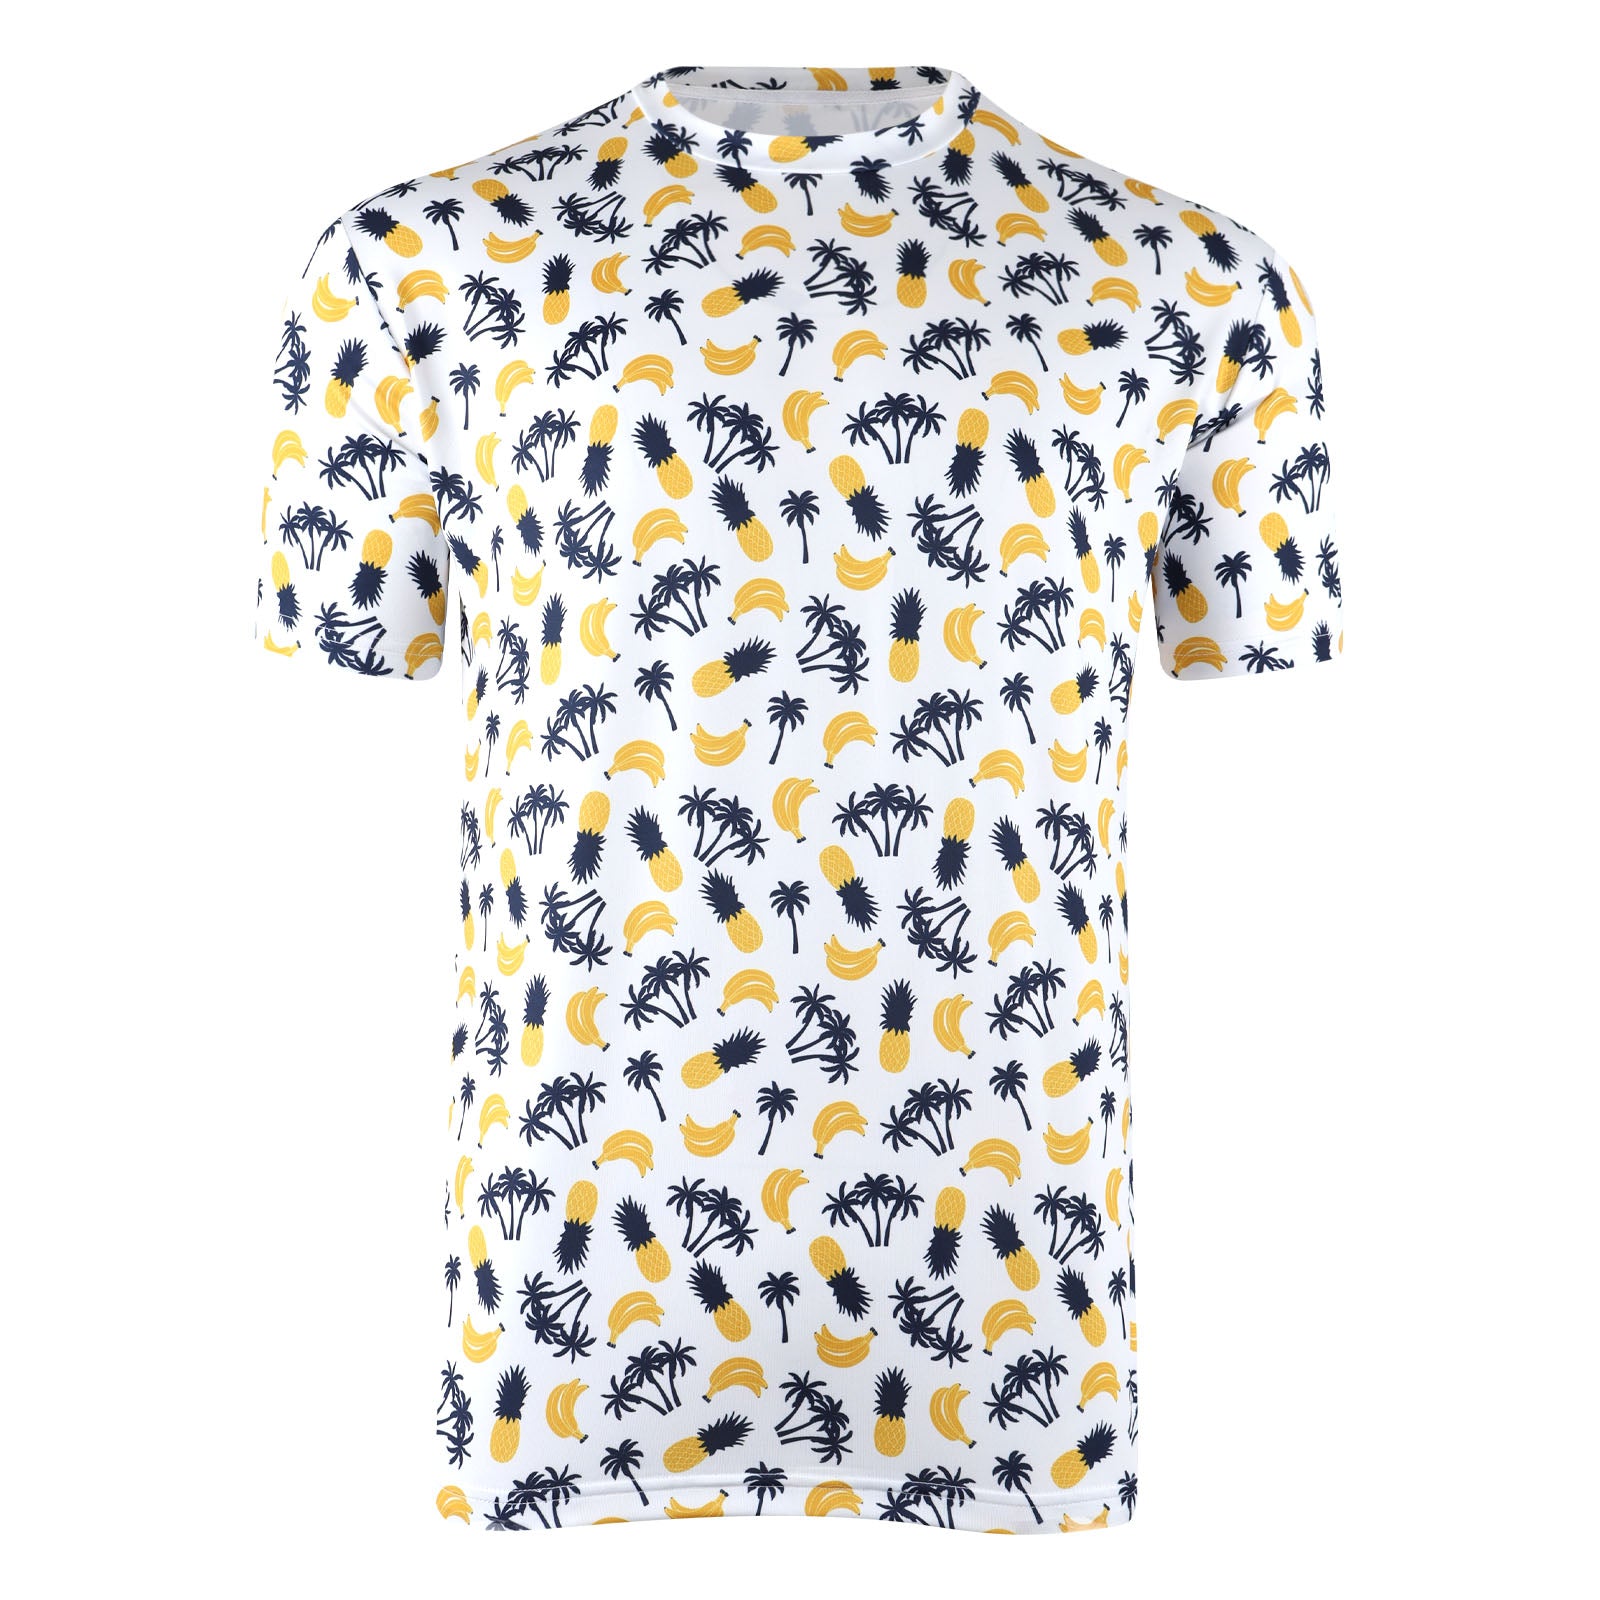 Bananapple t-shirt